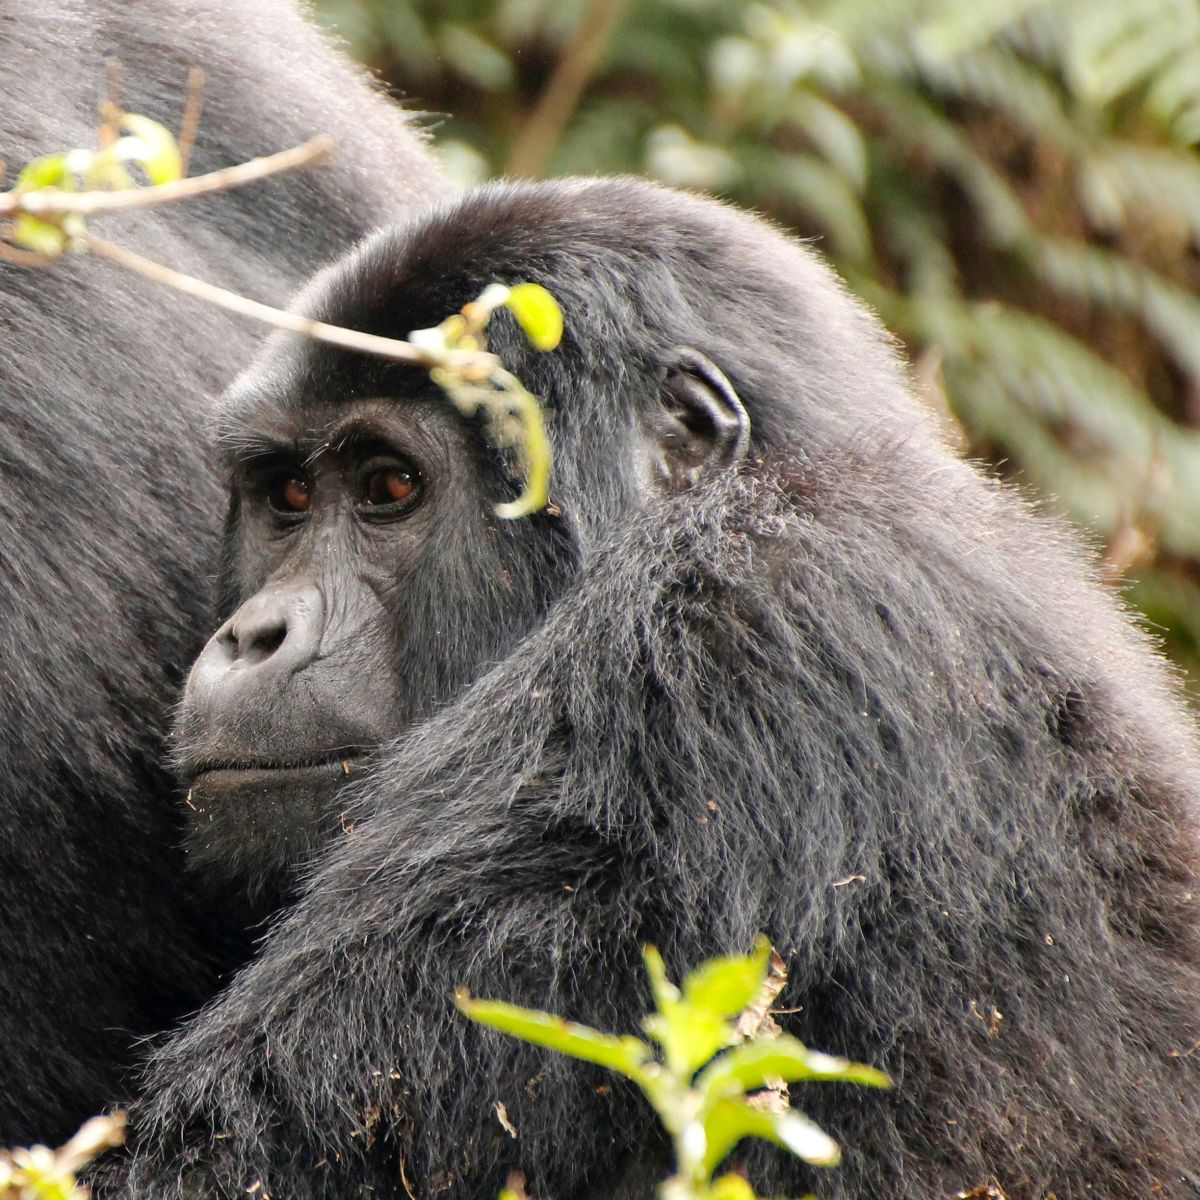 Gorillas in Bwindi, Uganda